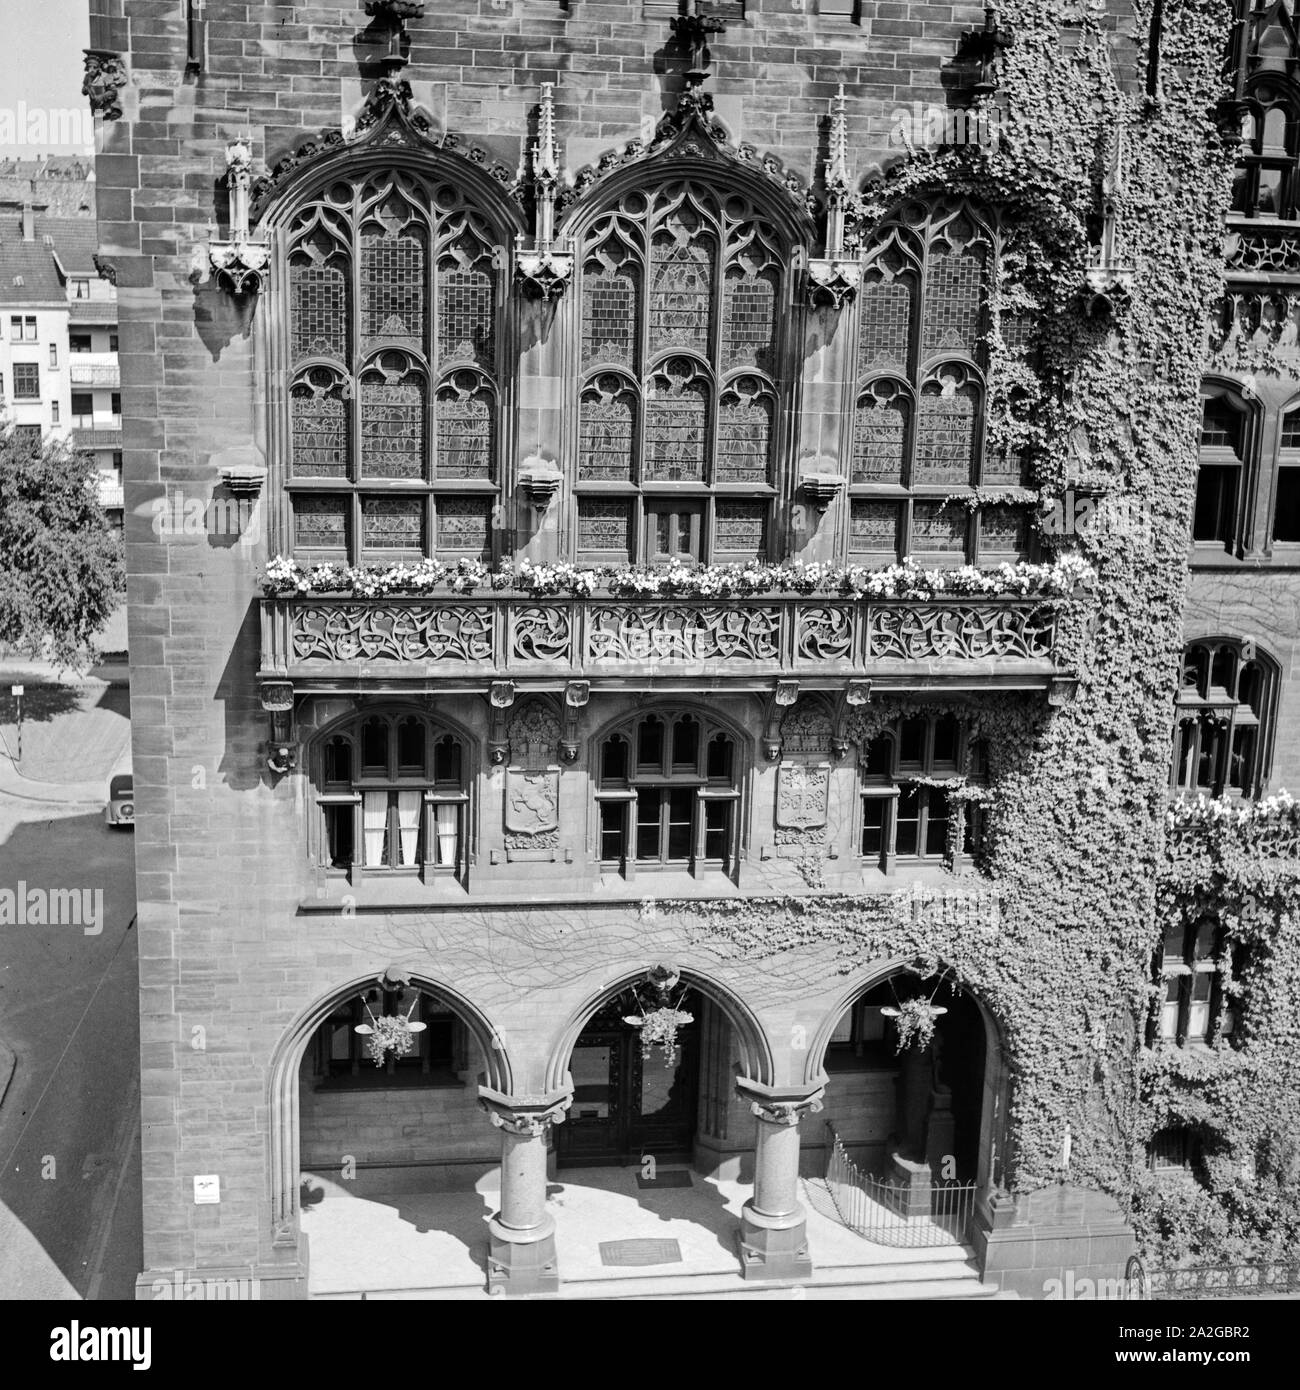 Das Rathaus in Hagen, Deutschland 1930er Jahre. Hagen city hall, Germany 1930s. Stock Photo